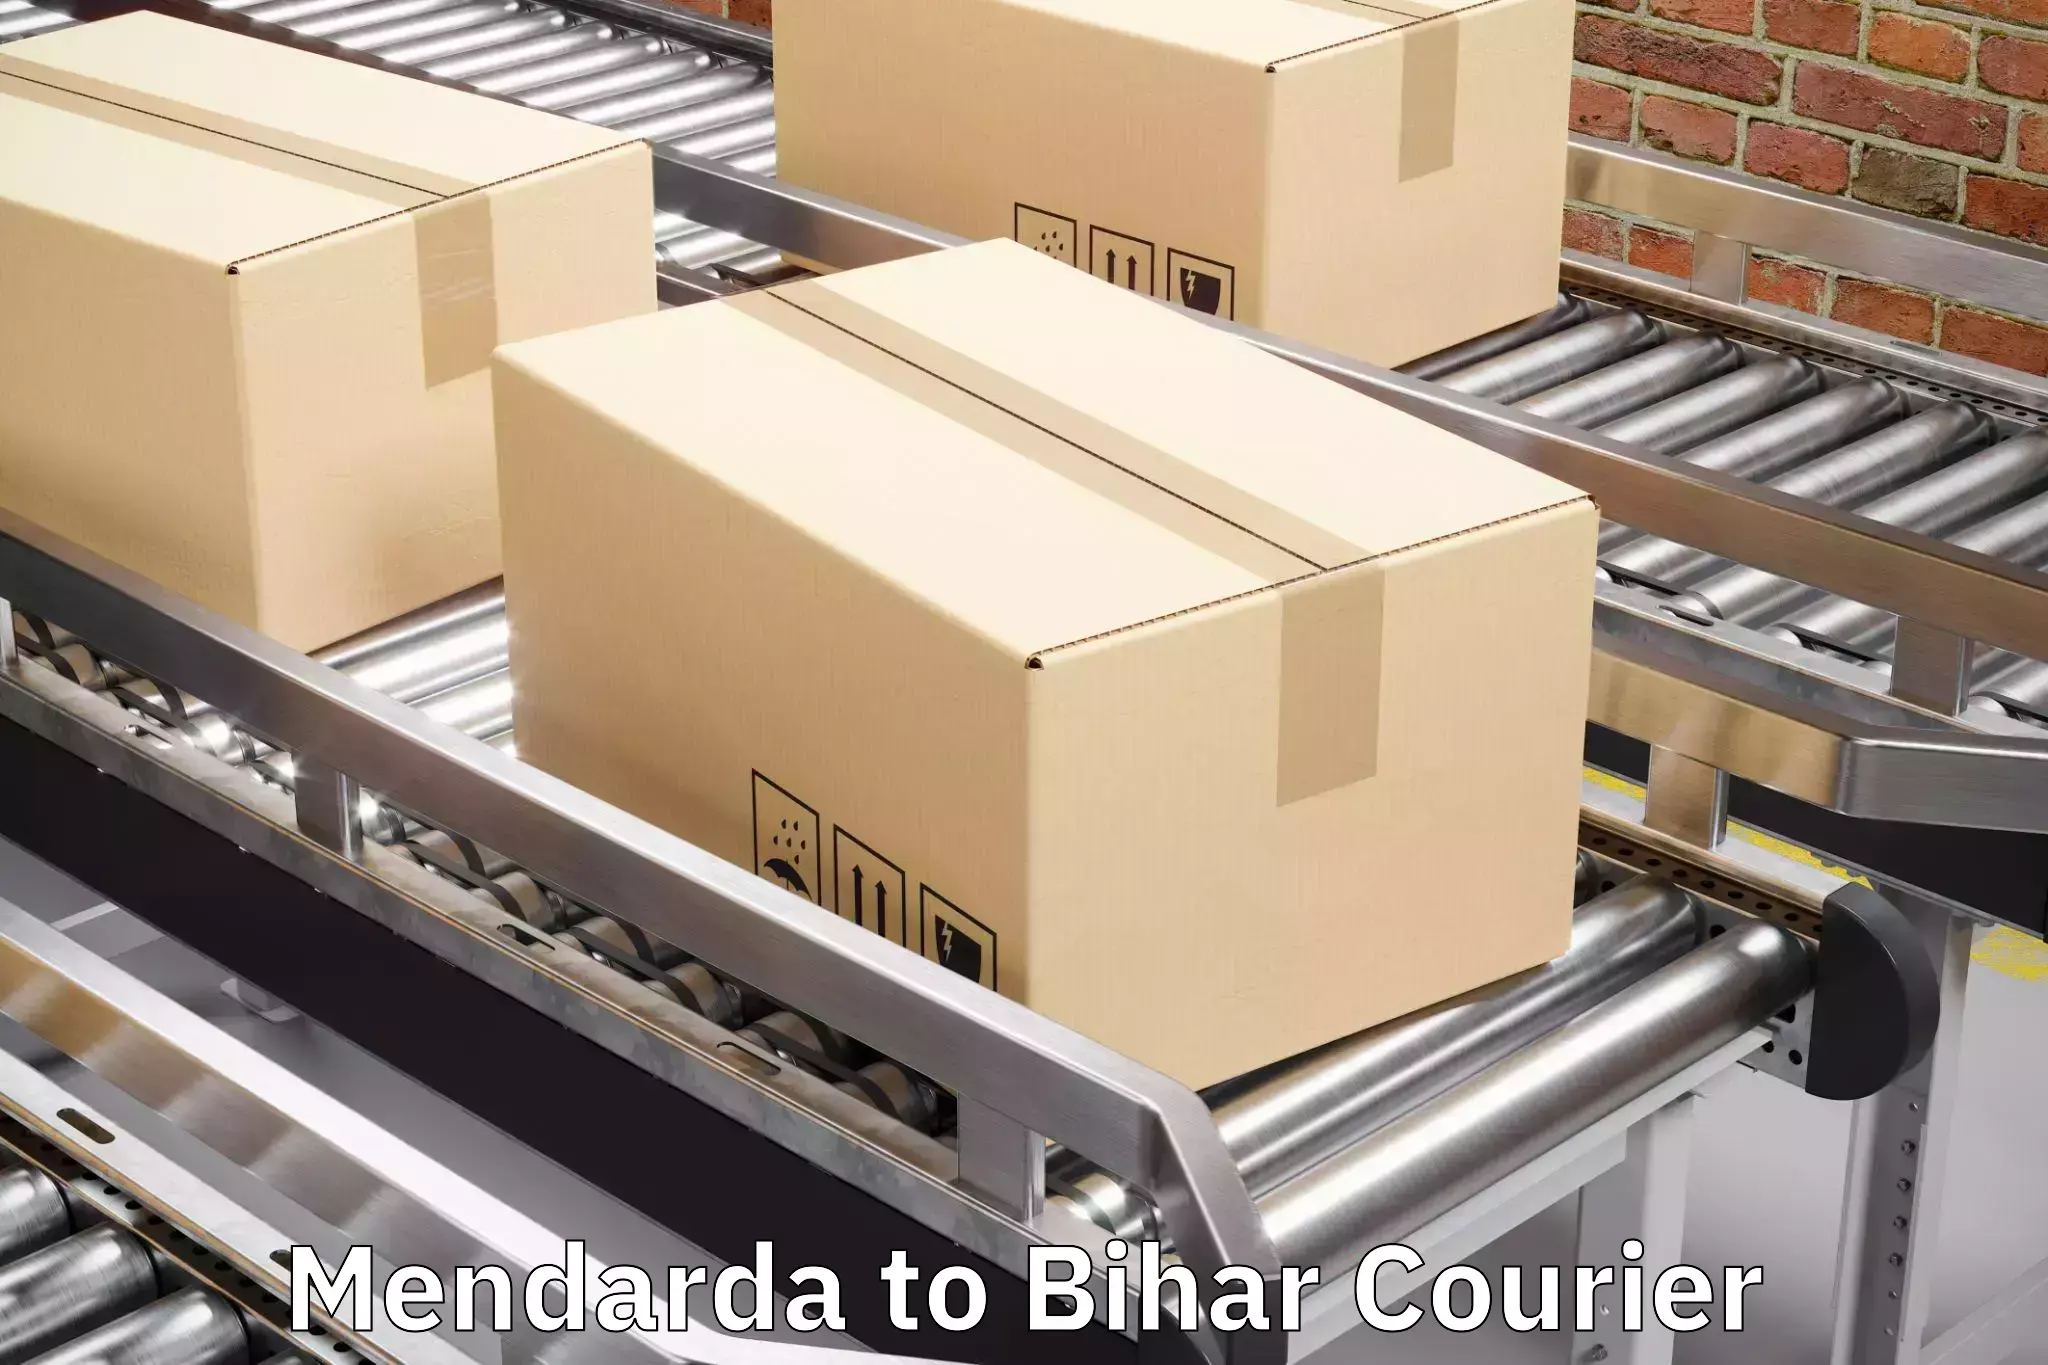 Baggage handling services Mendarda to Goh Aurangabad